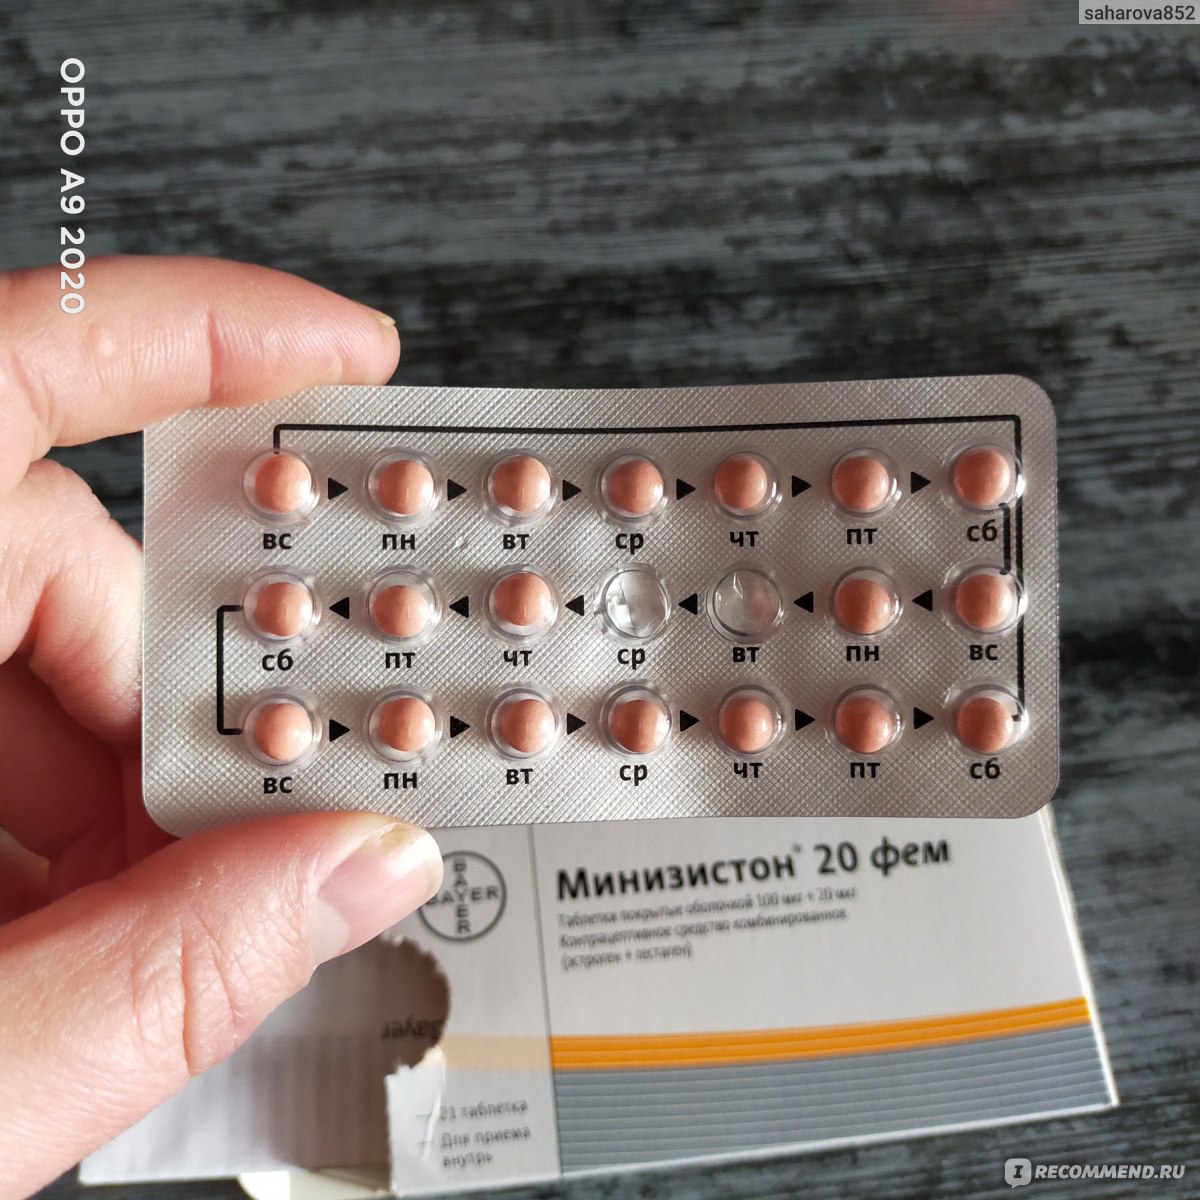 Контрацептивы Минизистон 20 фем - «Таблетка которая действительно .